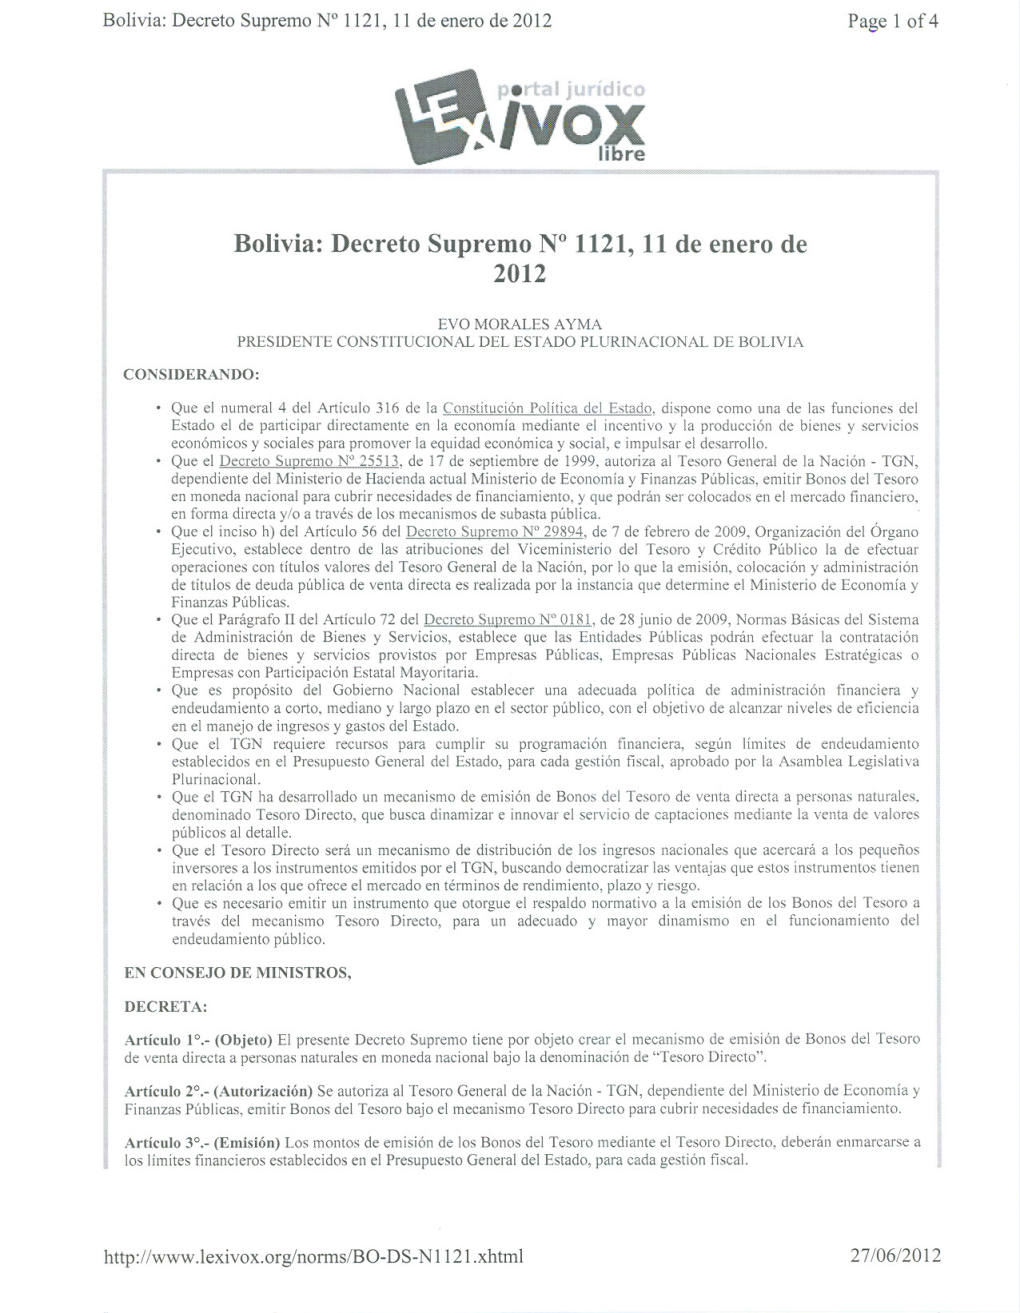 Bolivia: Decreto Supremo N° 1121, 11De Enero De 2012